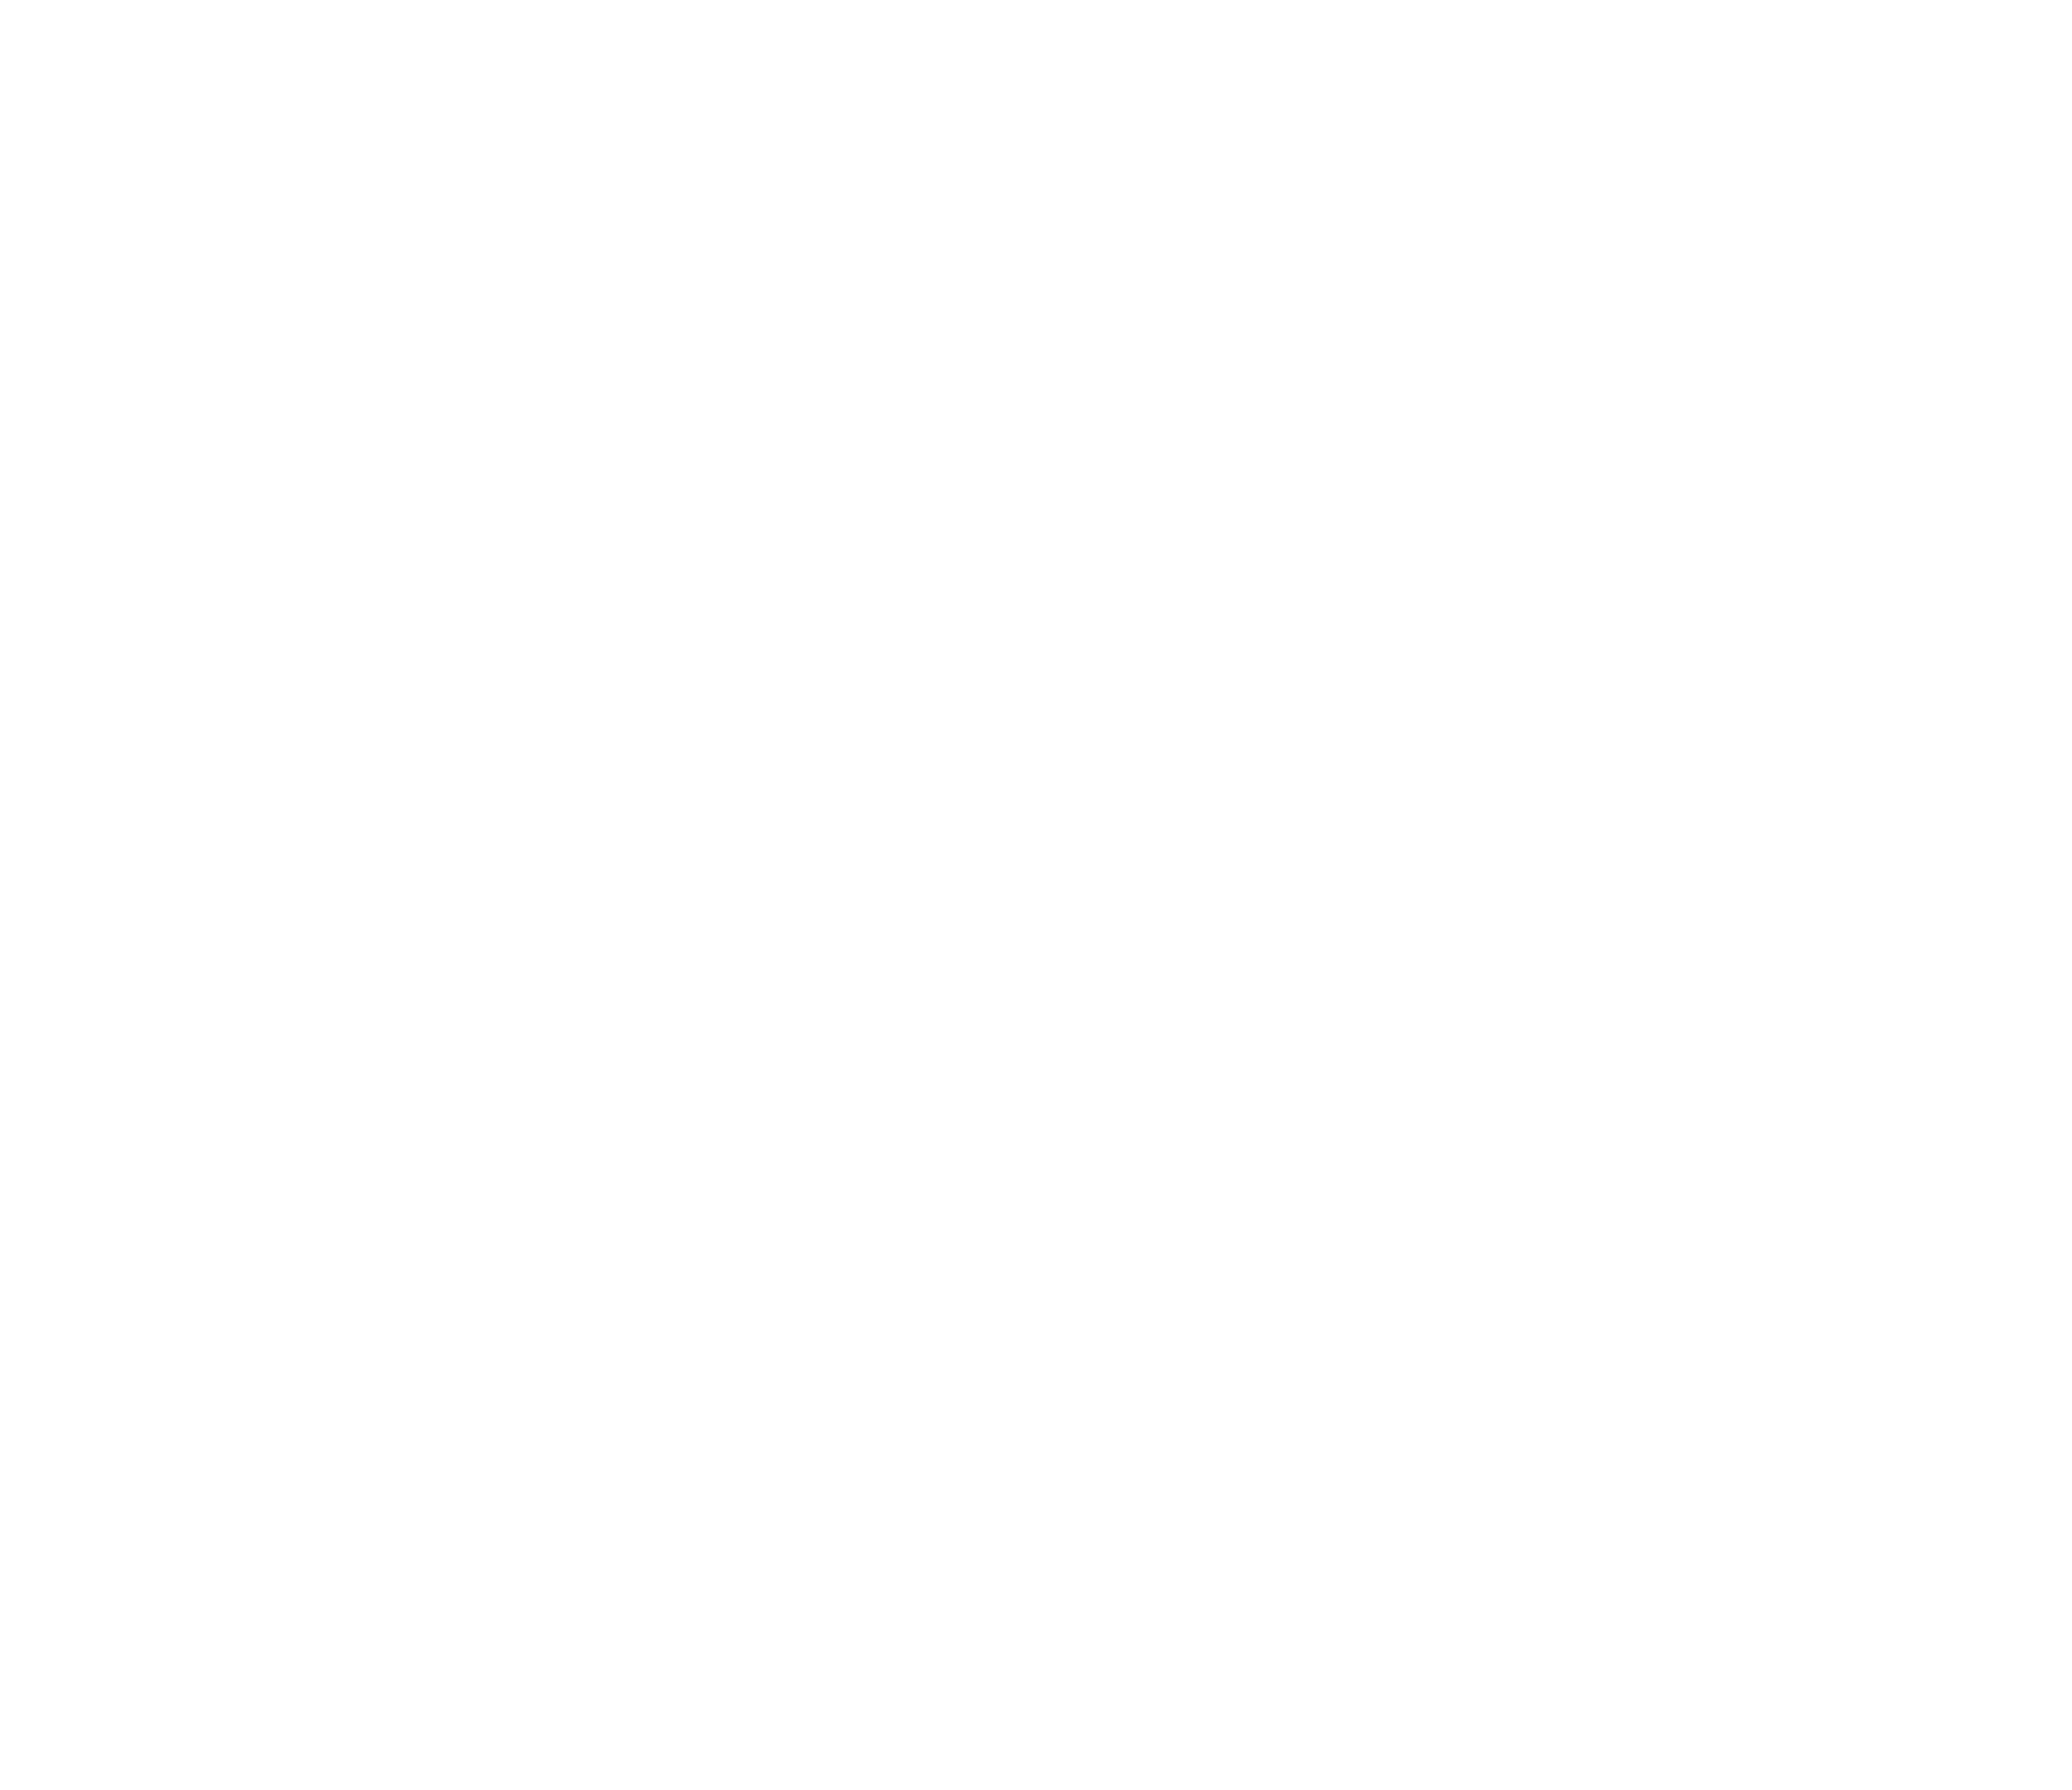 Johnnie